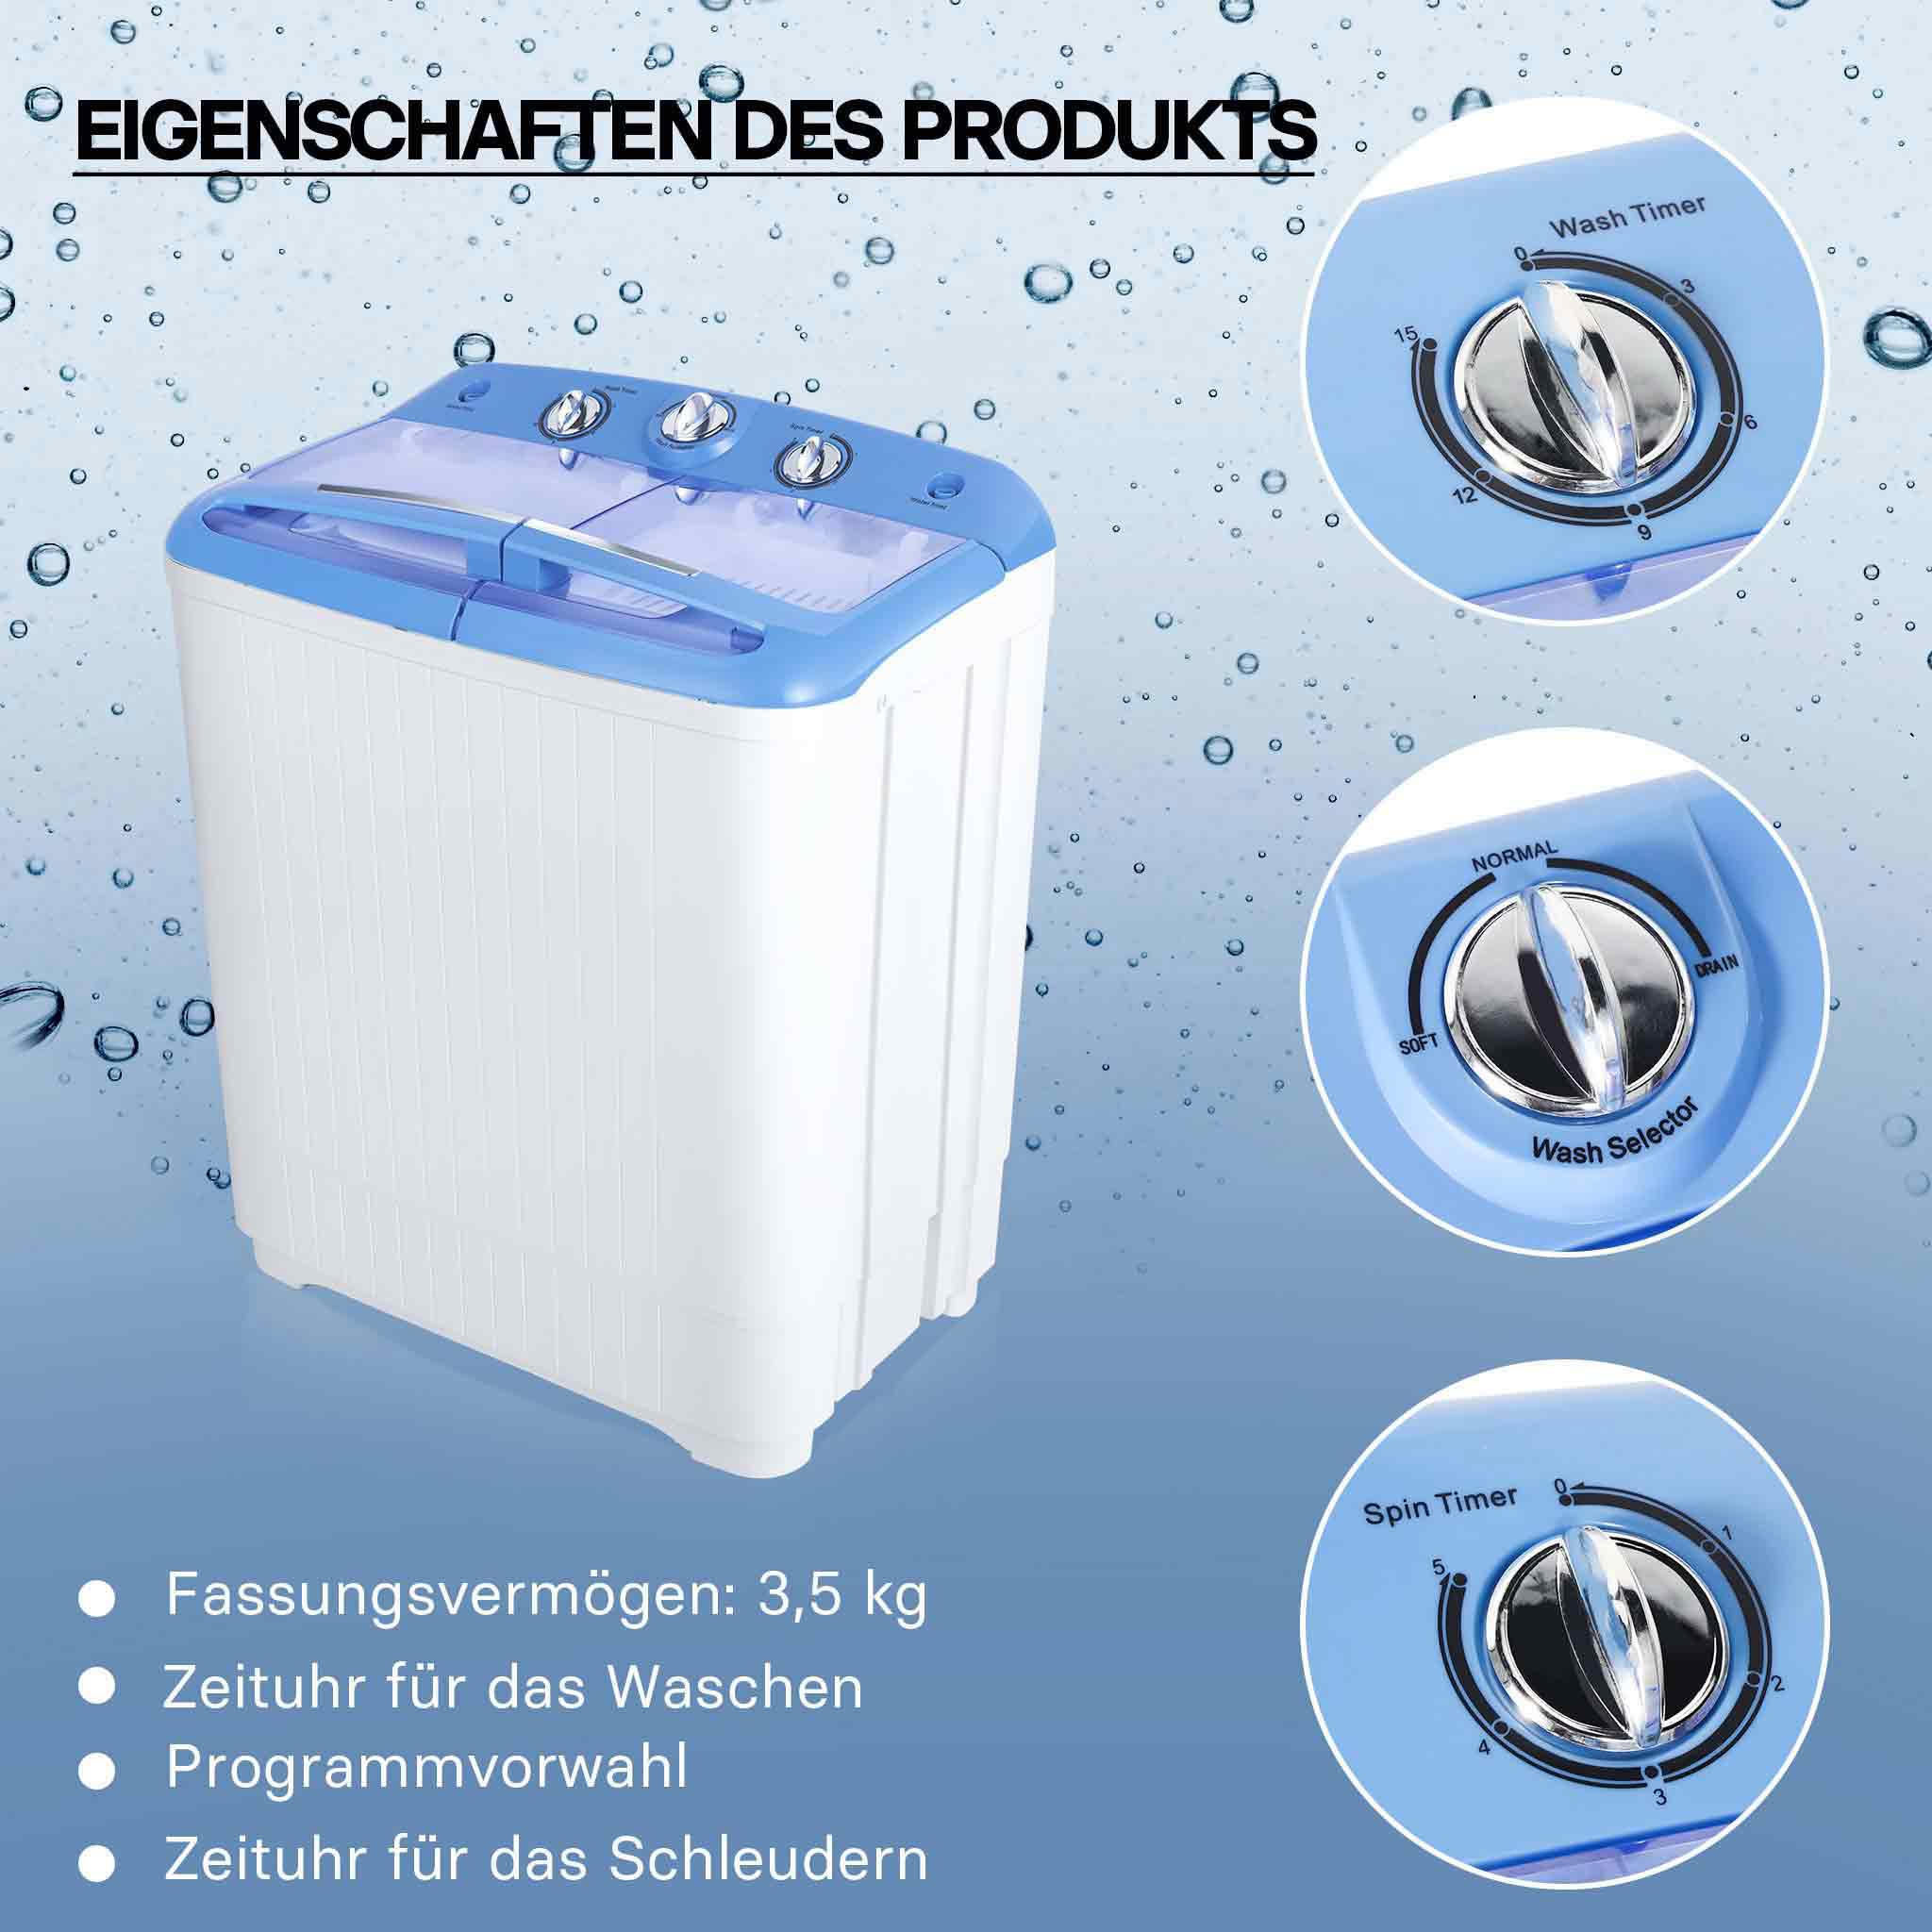 KUPPET Vollautomatische tragbare Waschmaschine, Germany